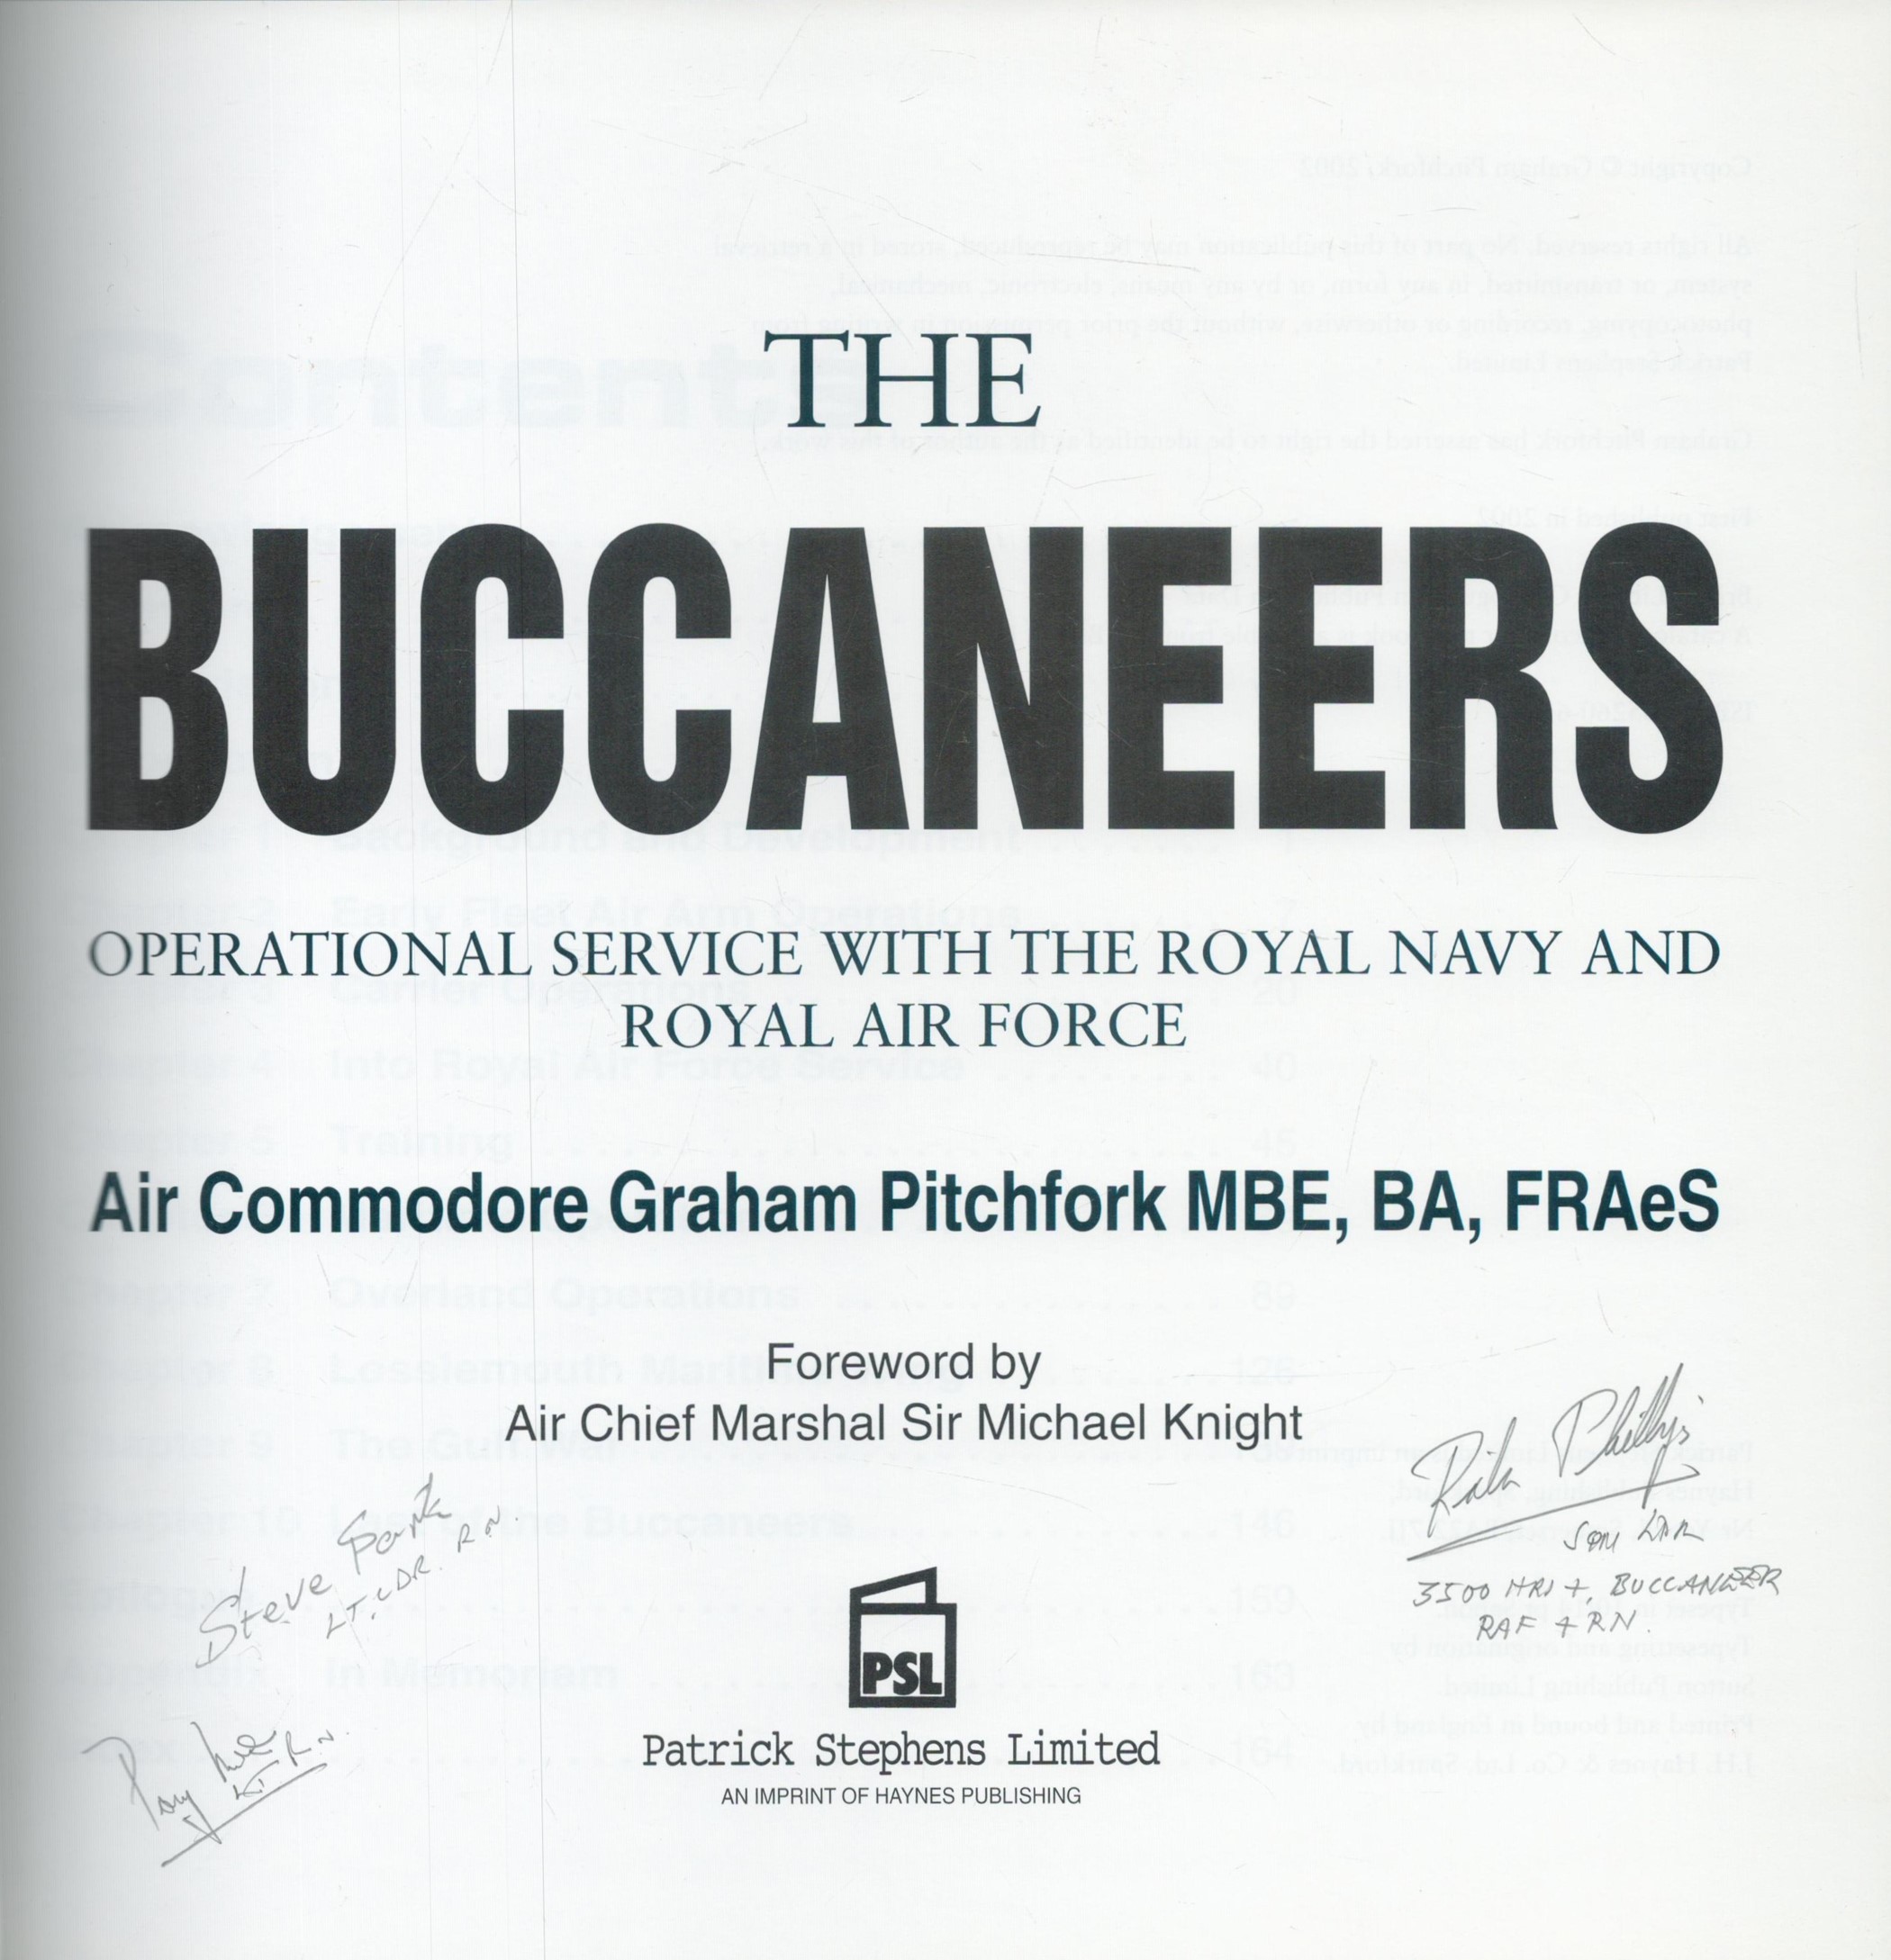 HMS Ark Royal Buccaneer Jet pilot Lt Cdr Steve Park RN, Sqn Ldr R Phillips signed hardback book - Image 3 of 4